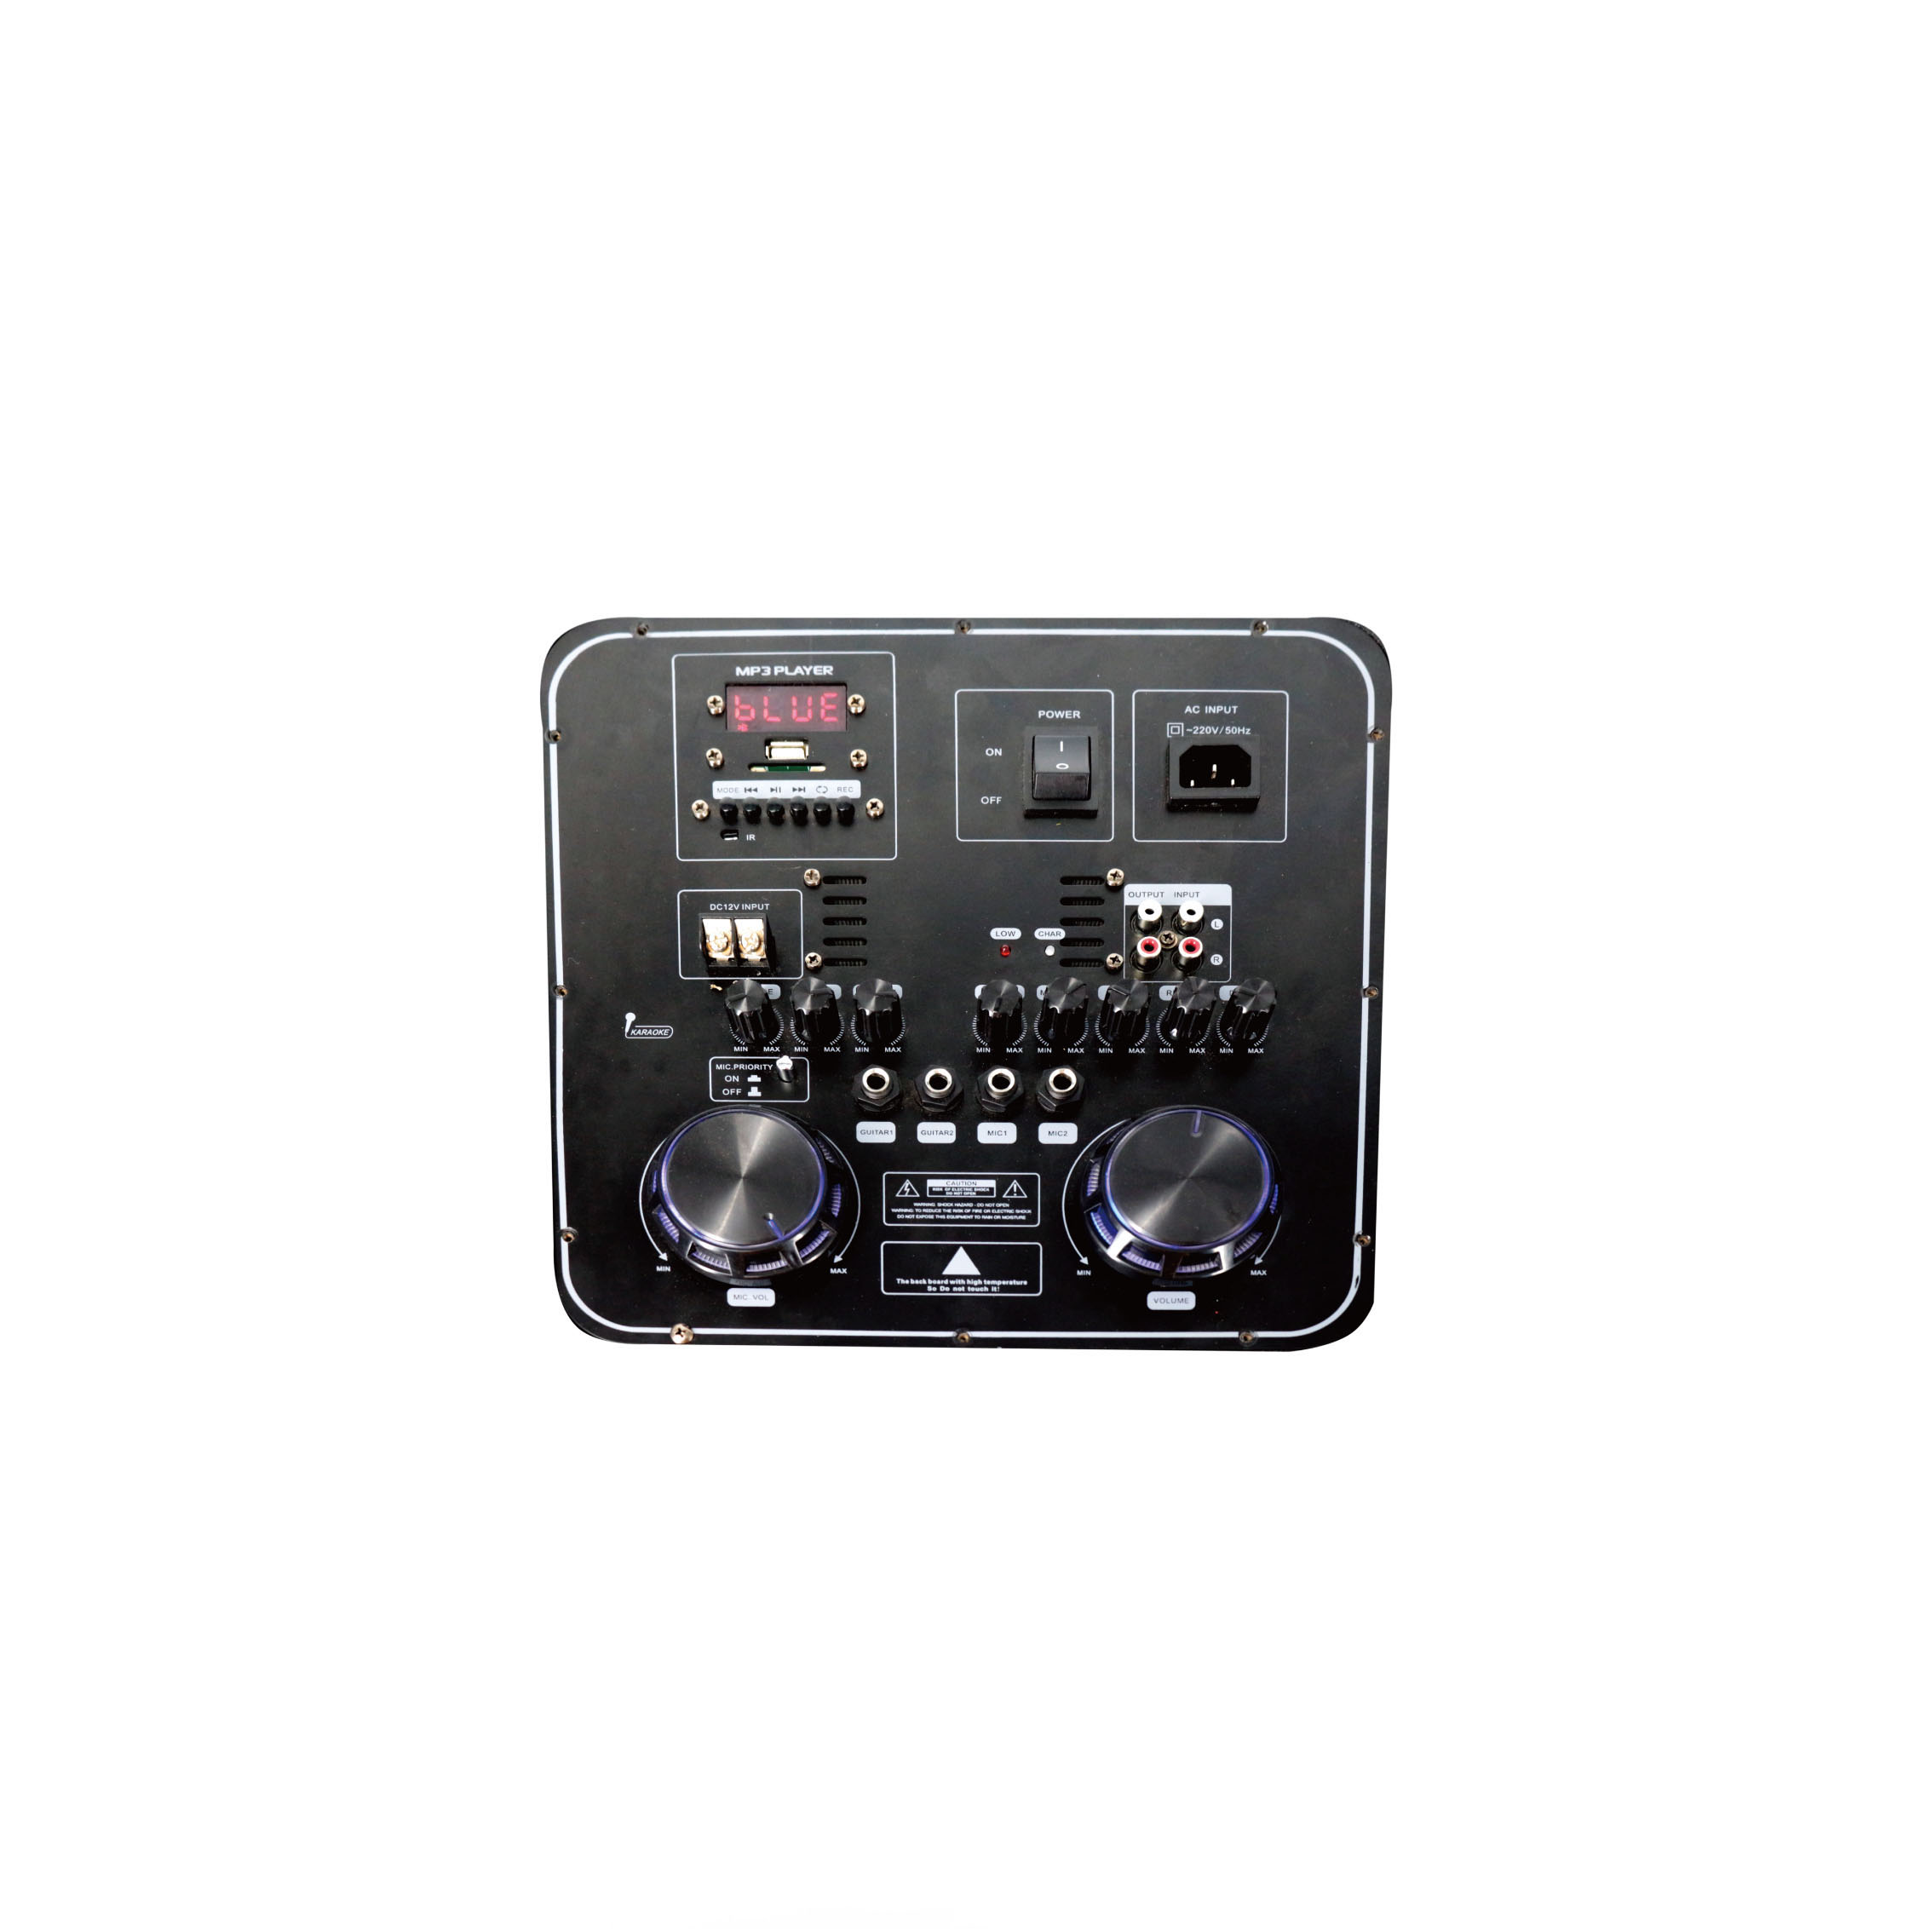 Gray Karaoke DJ Bass Portable Bt Wireless Trolly Speaker